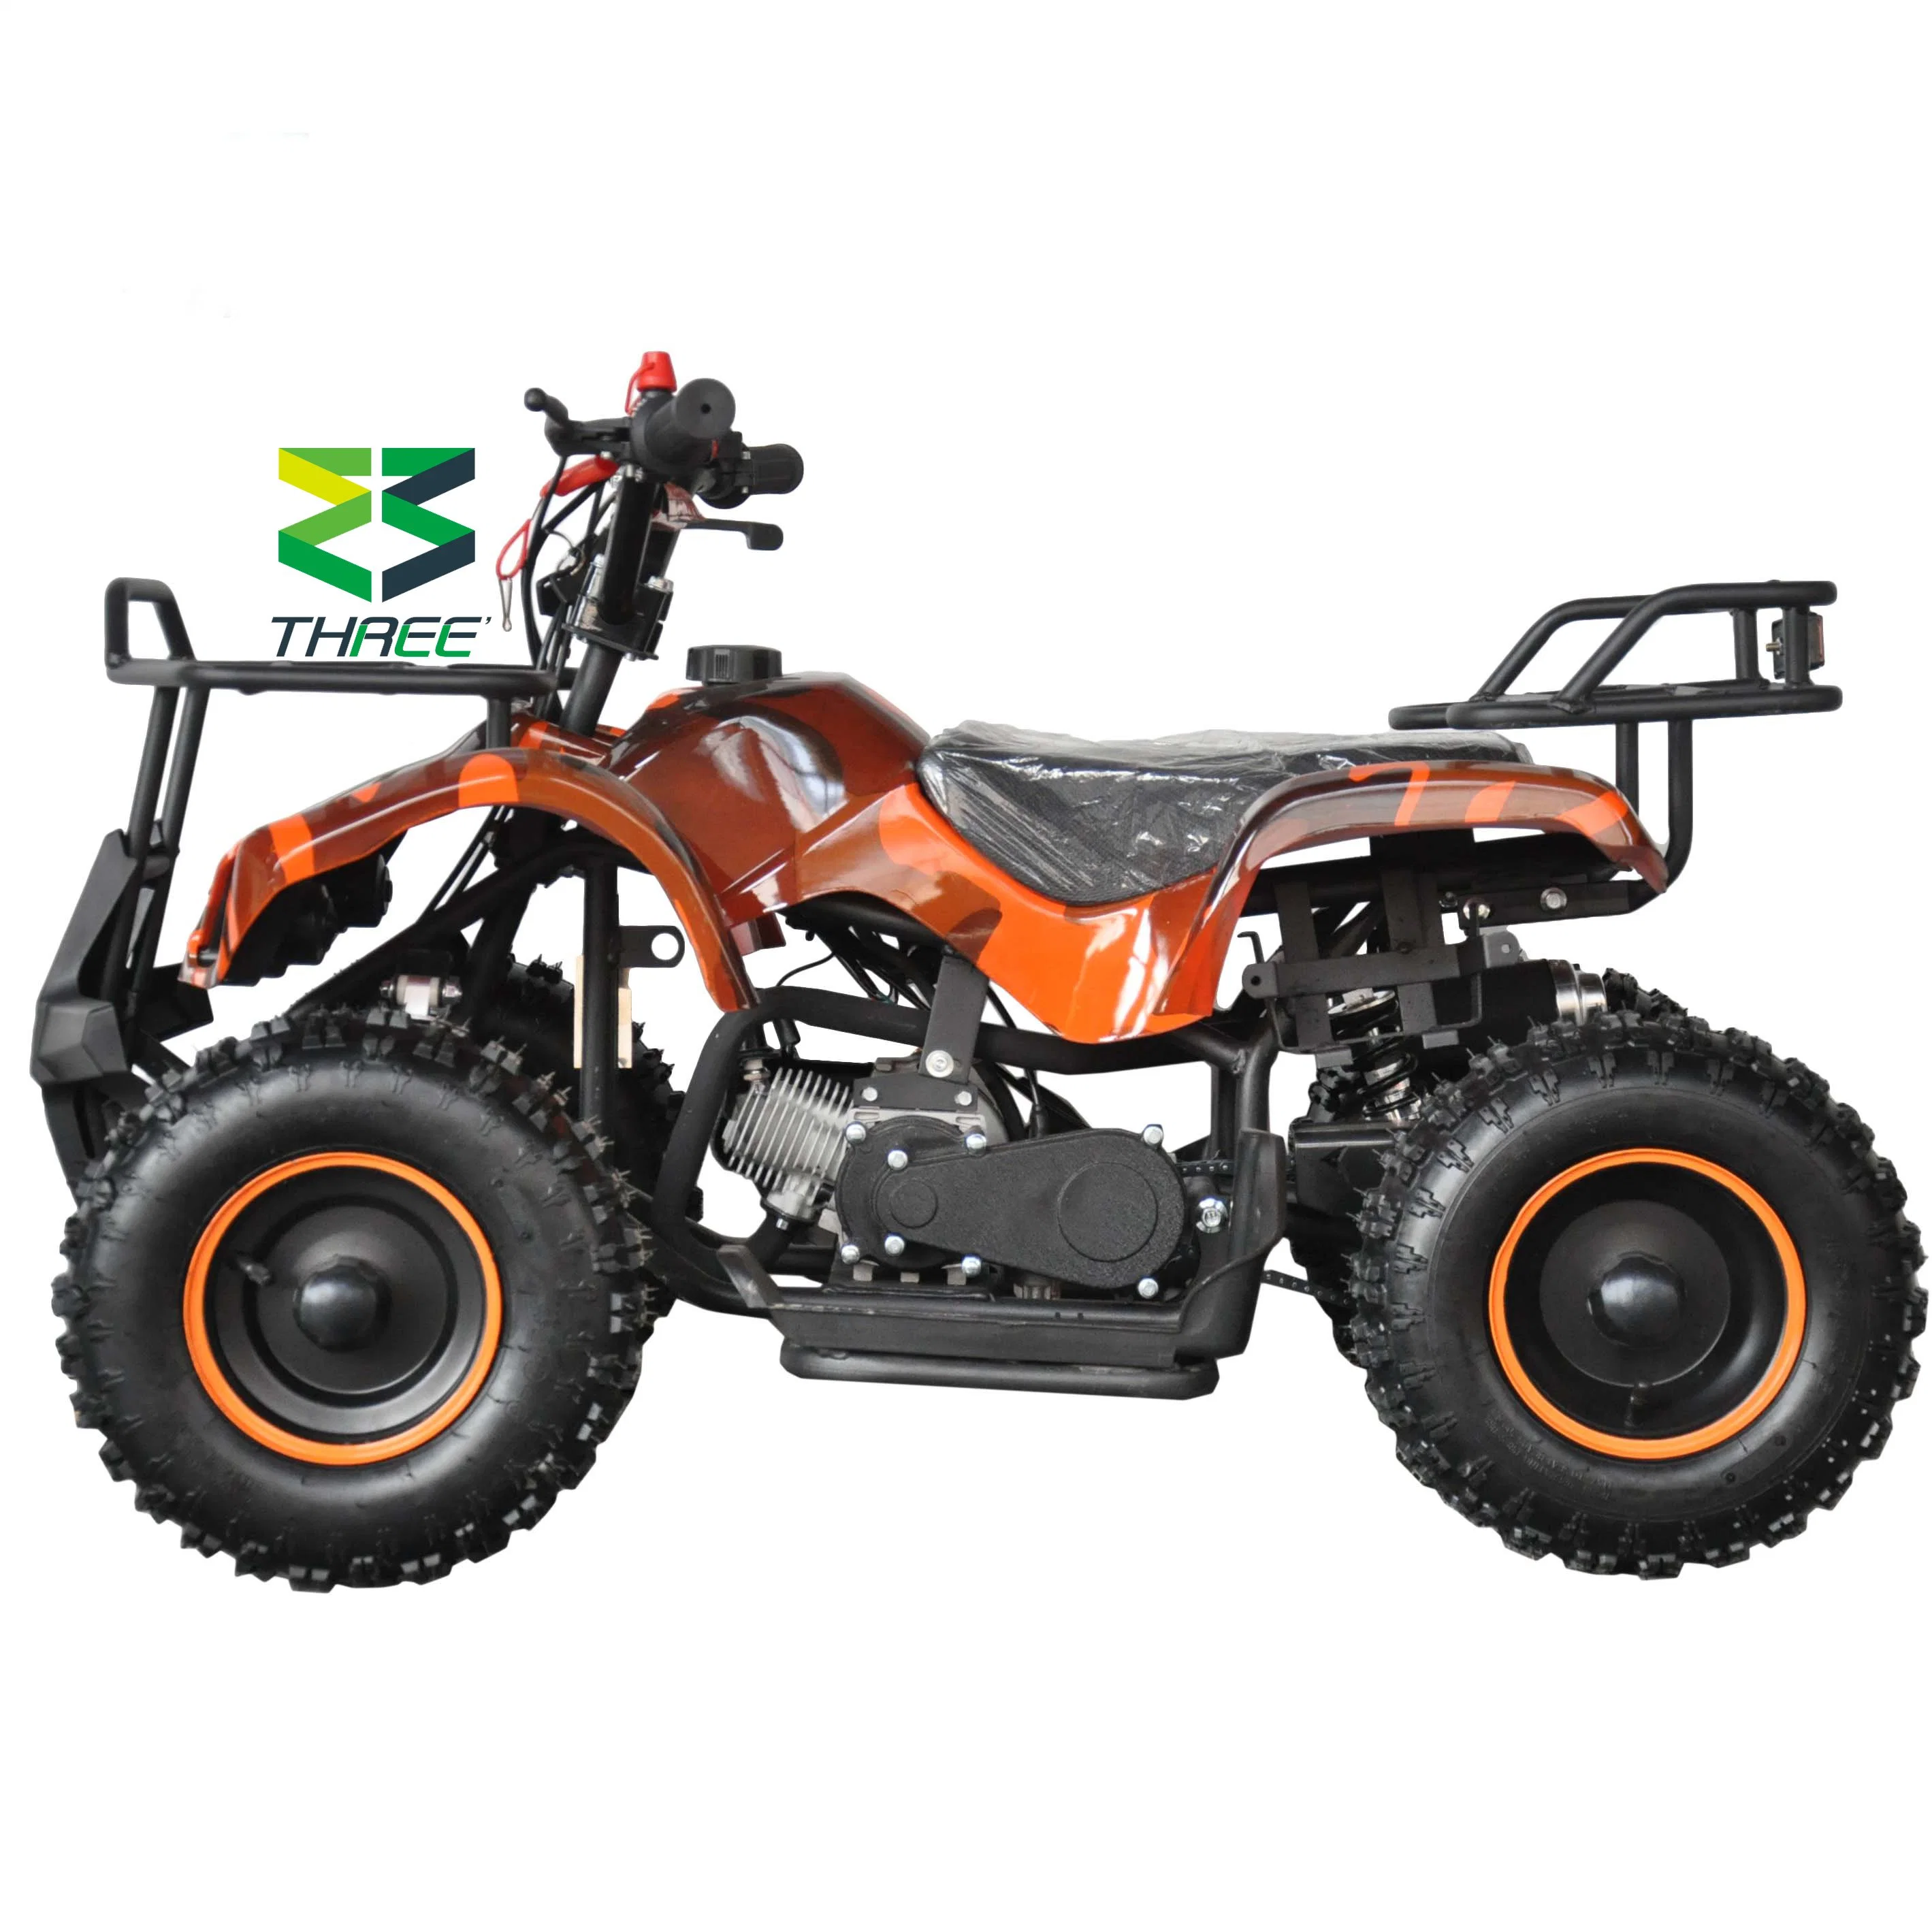 Sro off road nouveau Hot Sale Mini ATV de bonne qualité usine 49cc Quad Scooter pour la vente de VTT